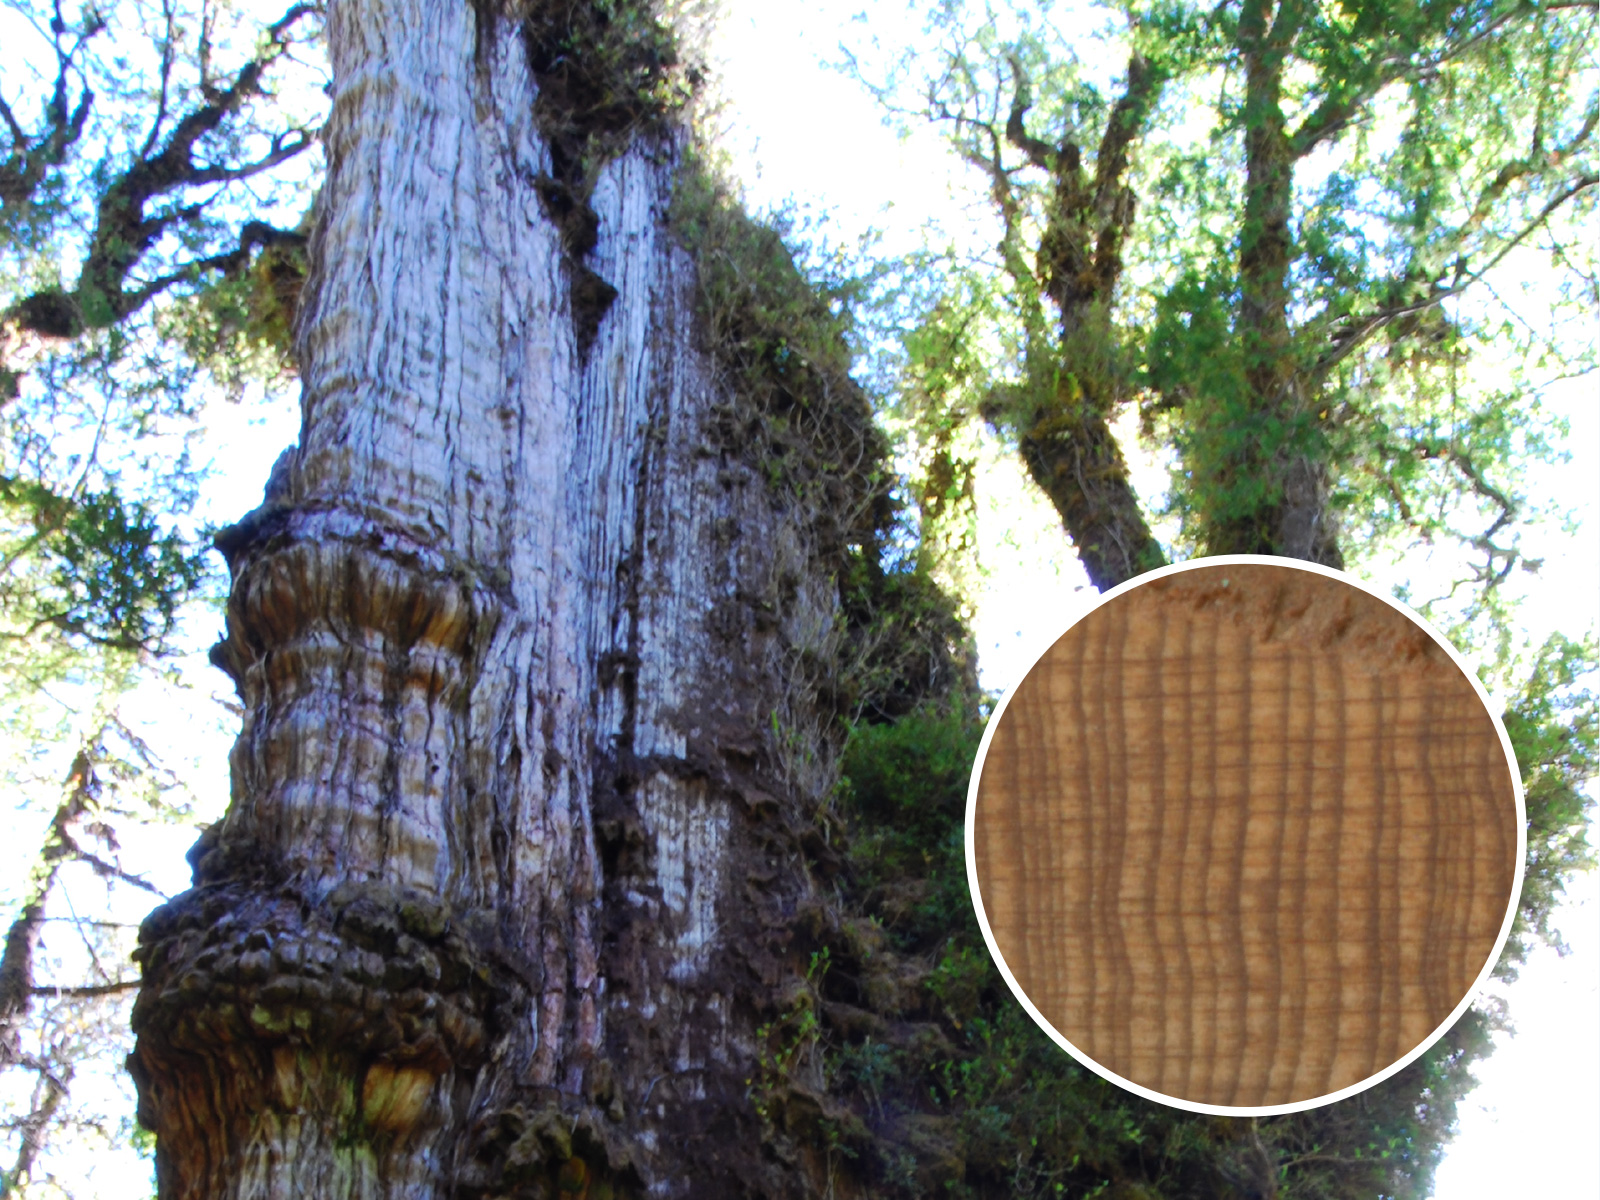 Világ legidősebb fája - patagón ciprus